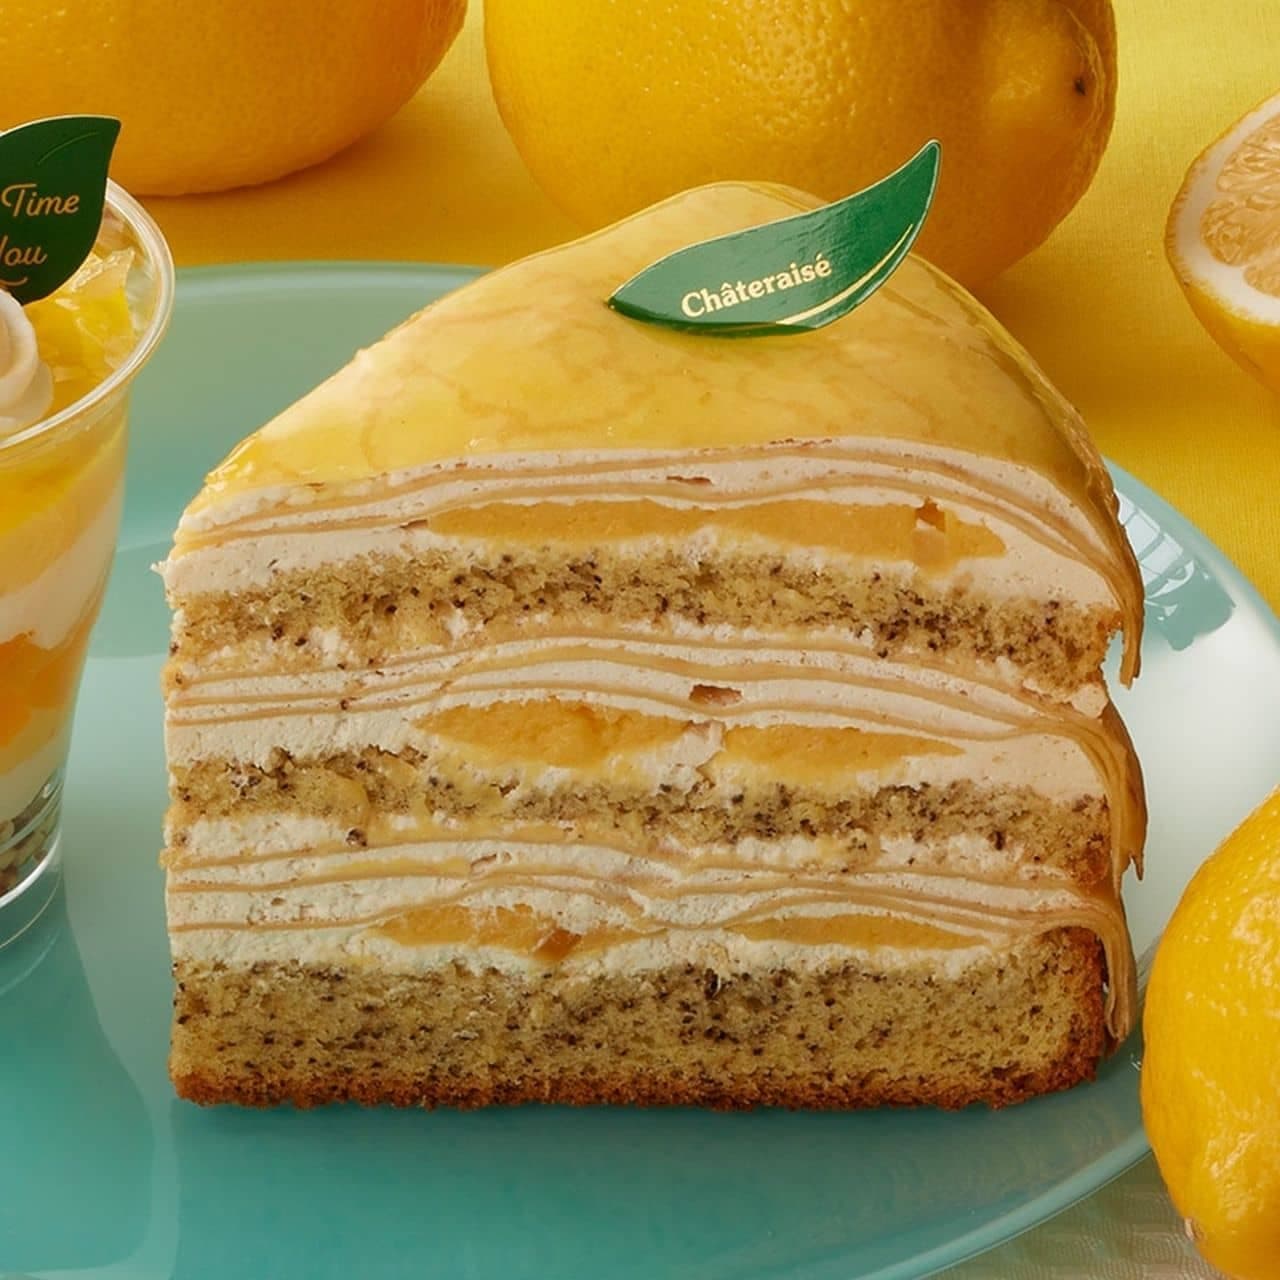 シャトレーゼ「瀬戸内レモンと紅茶のクレープケーキ」